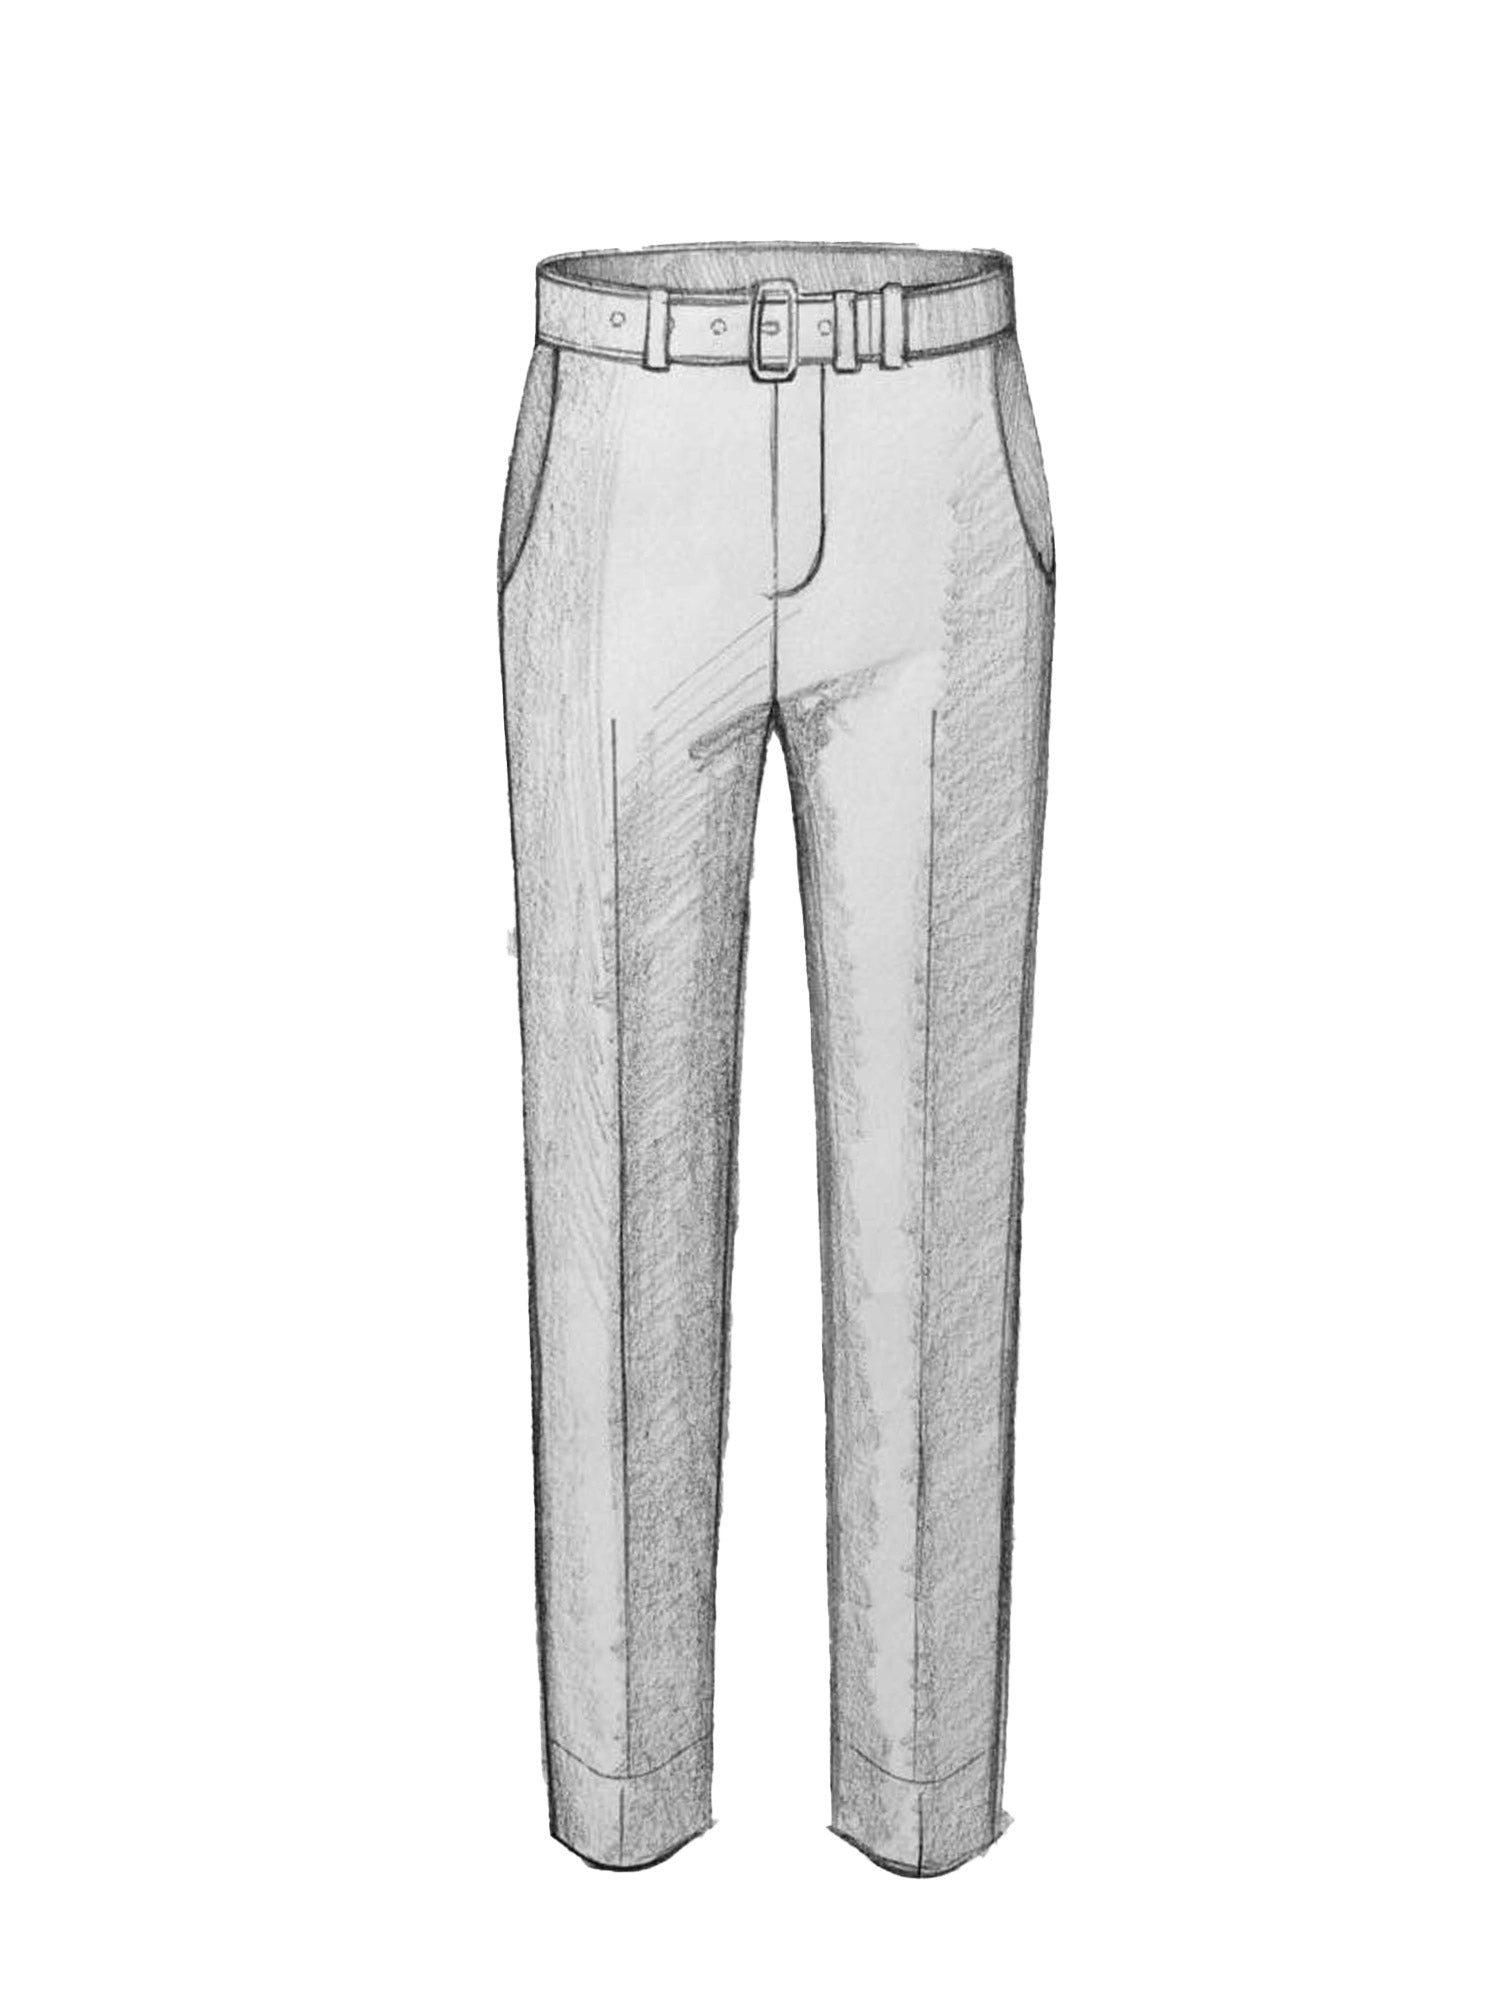 Custom Trouser